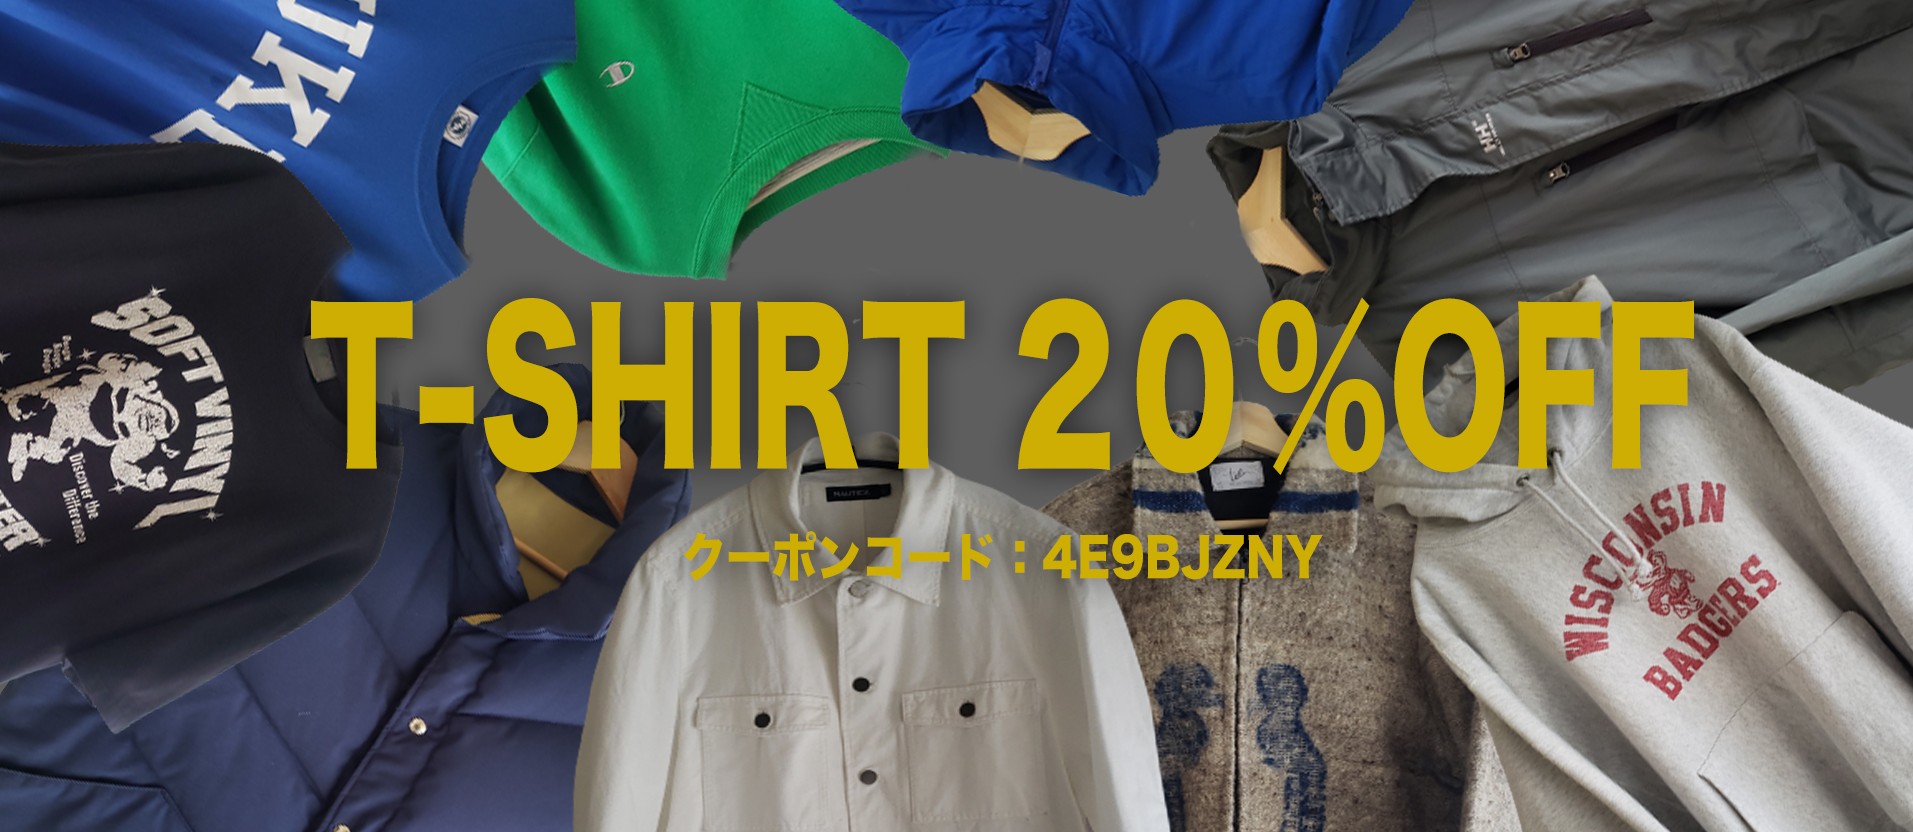 T-shirt 20%off